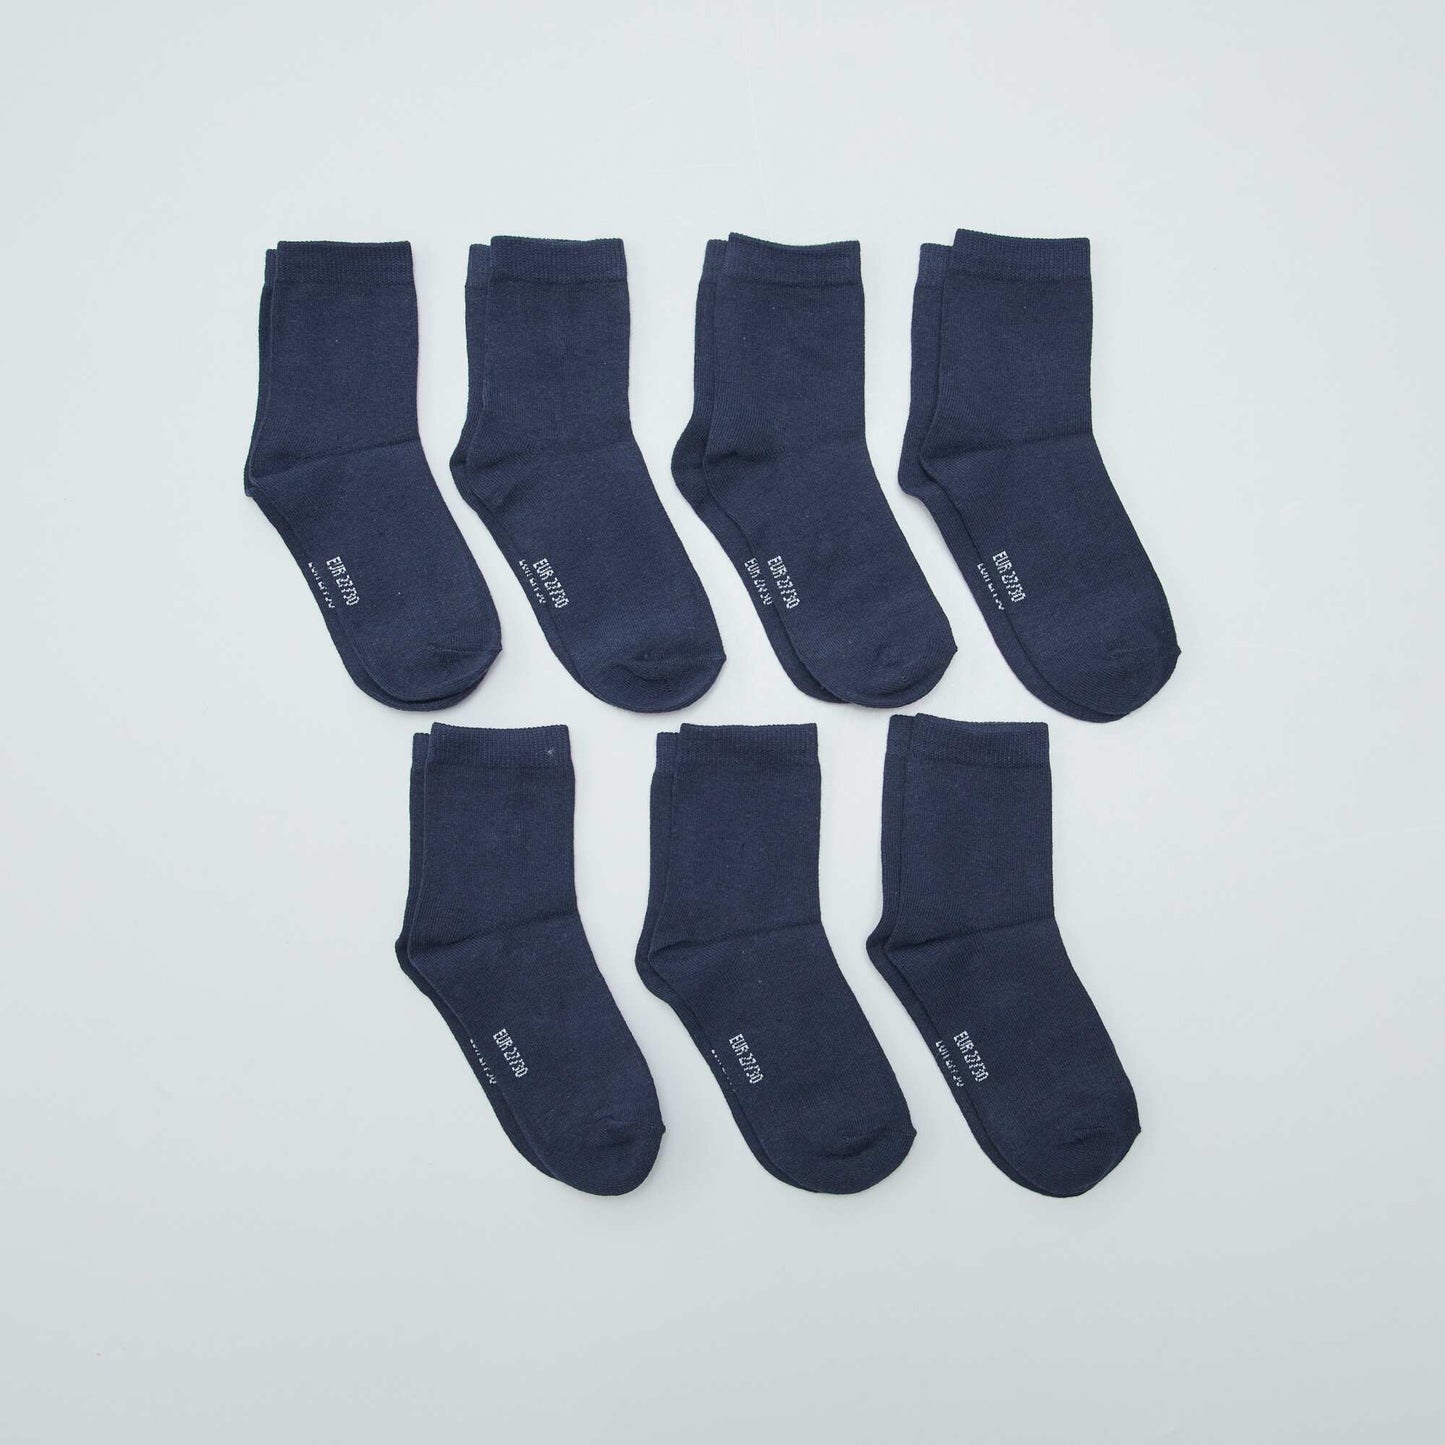 Pack of 7 pairs of socks BLACK